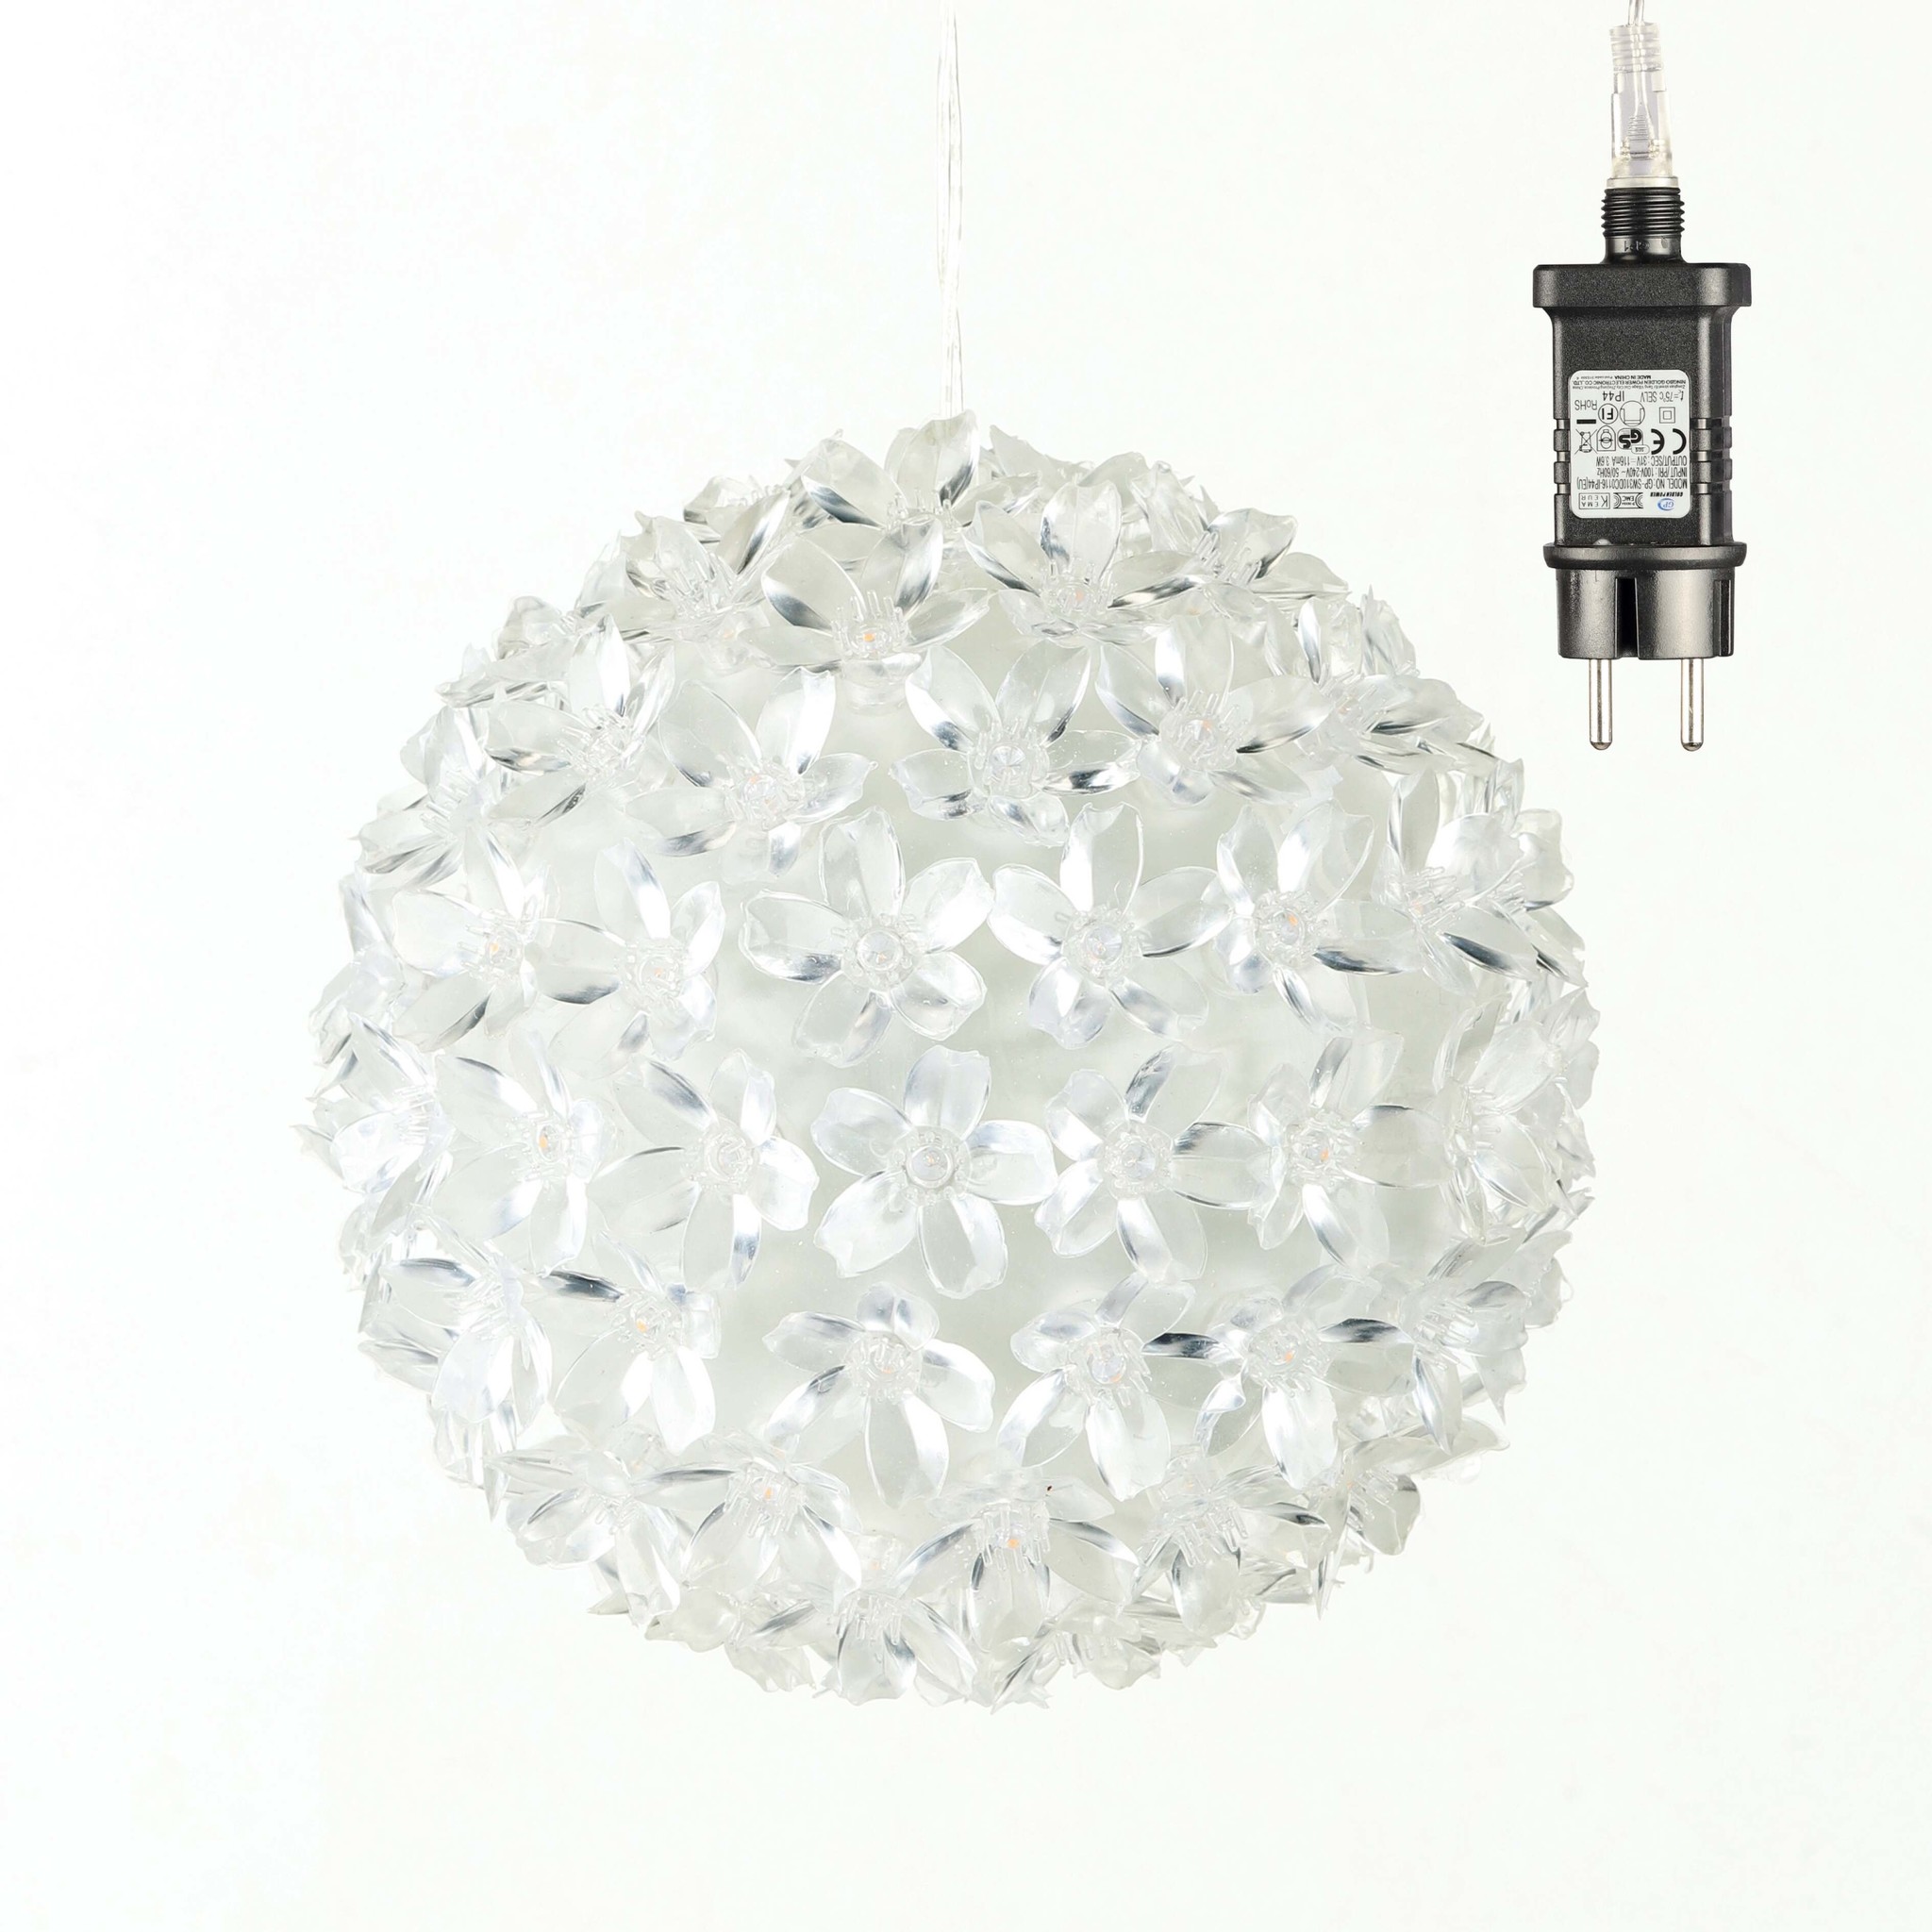 HI 75007 Lichterkugel 15cm LEDs - Erwin mit 100 Lücken warmweiss Versandhandel